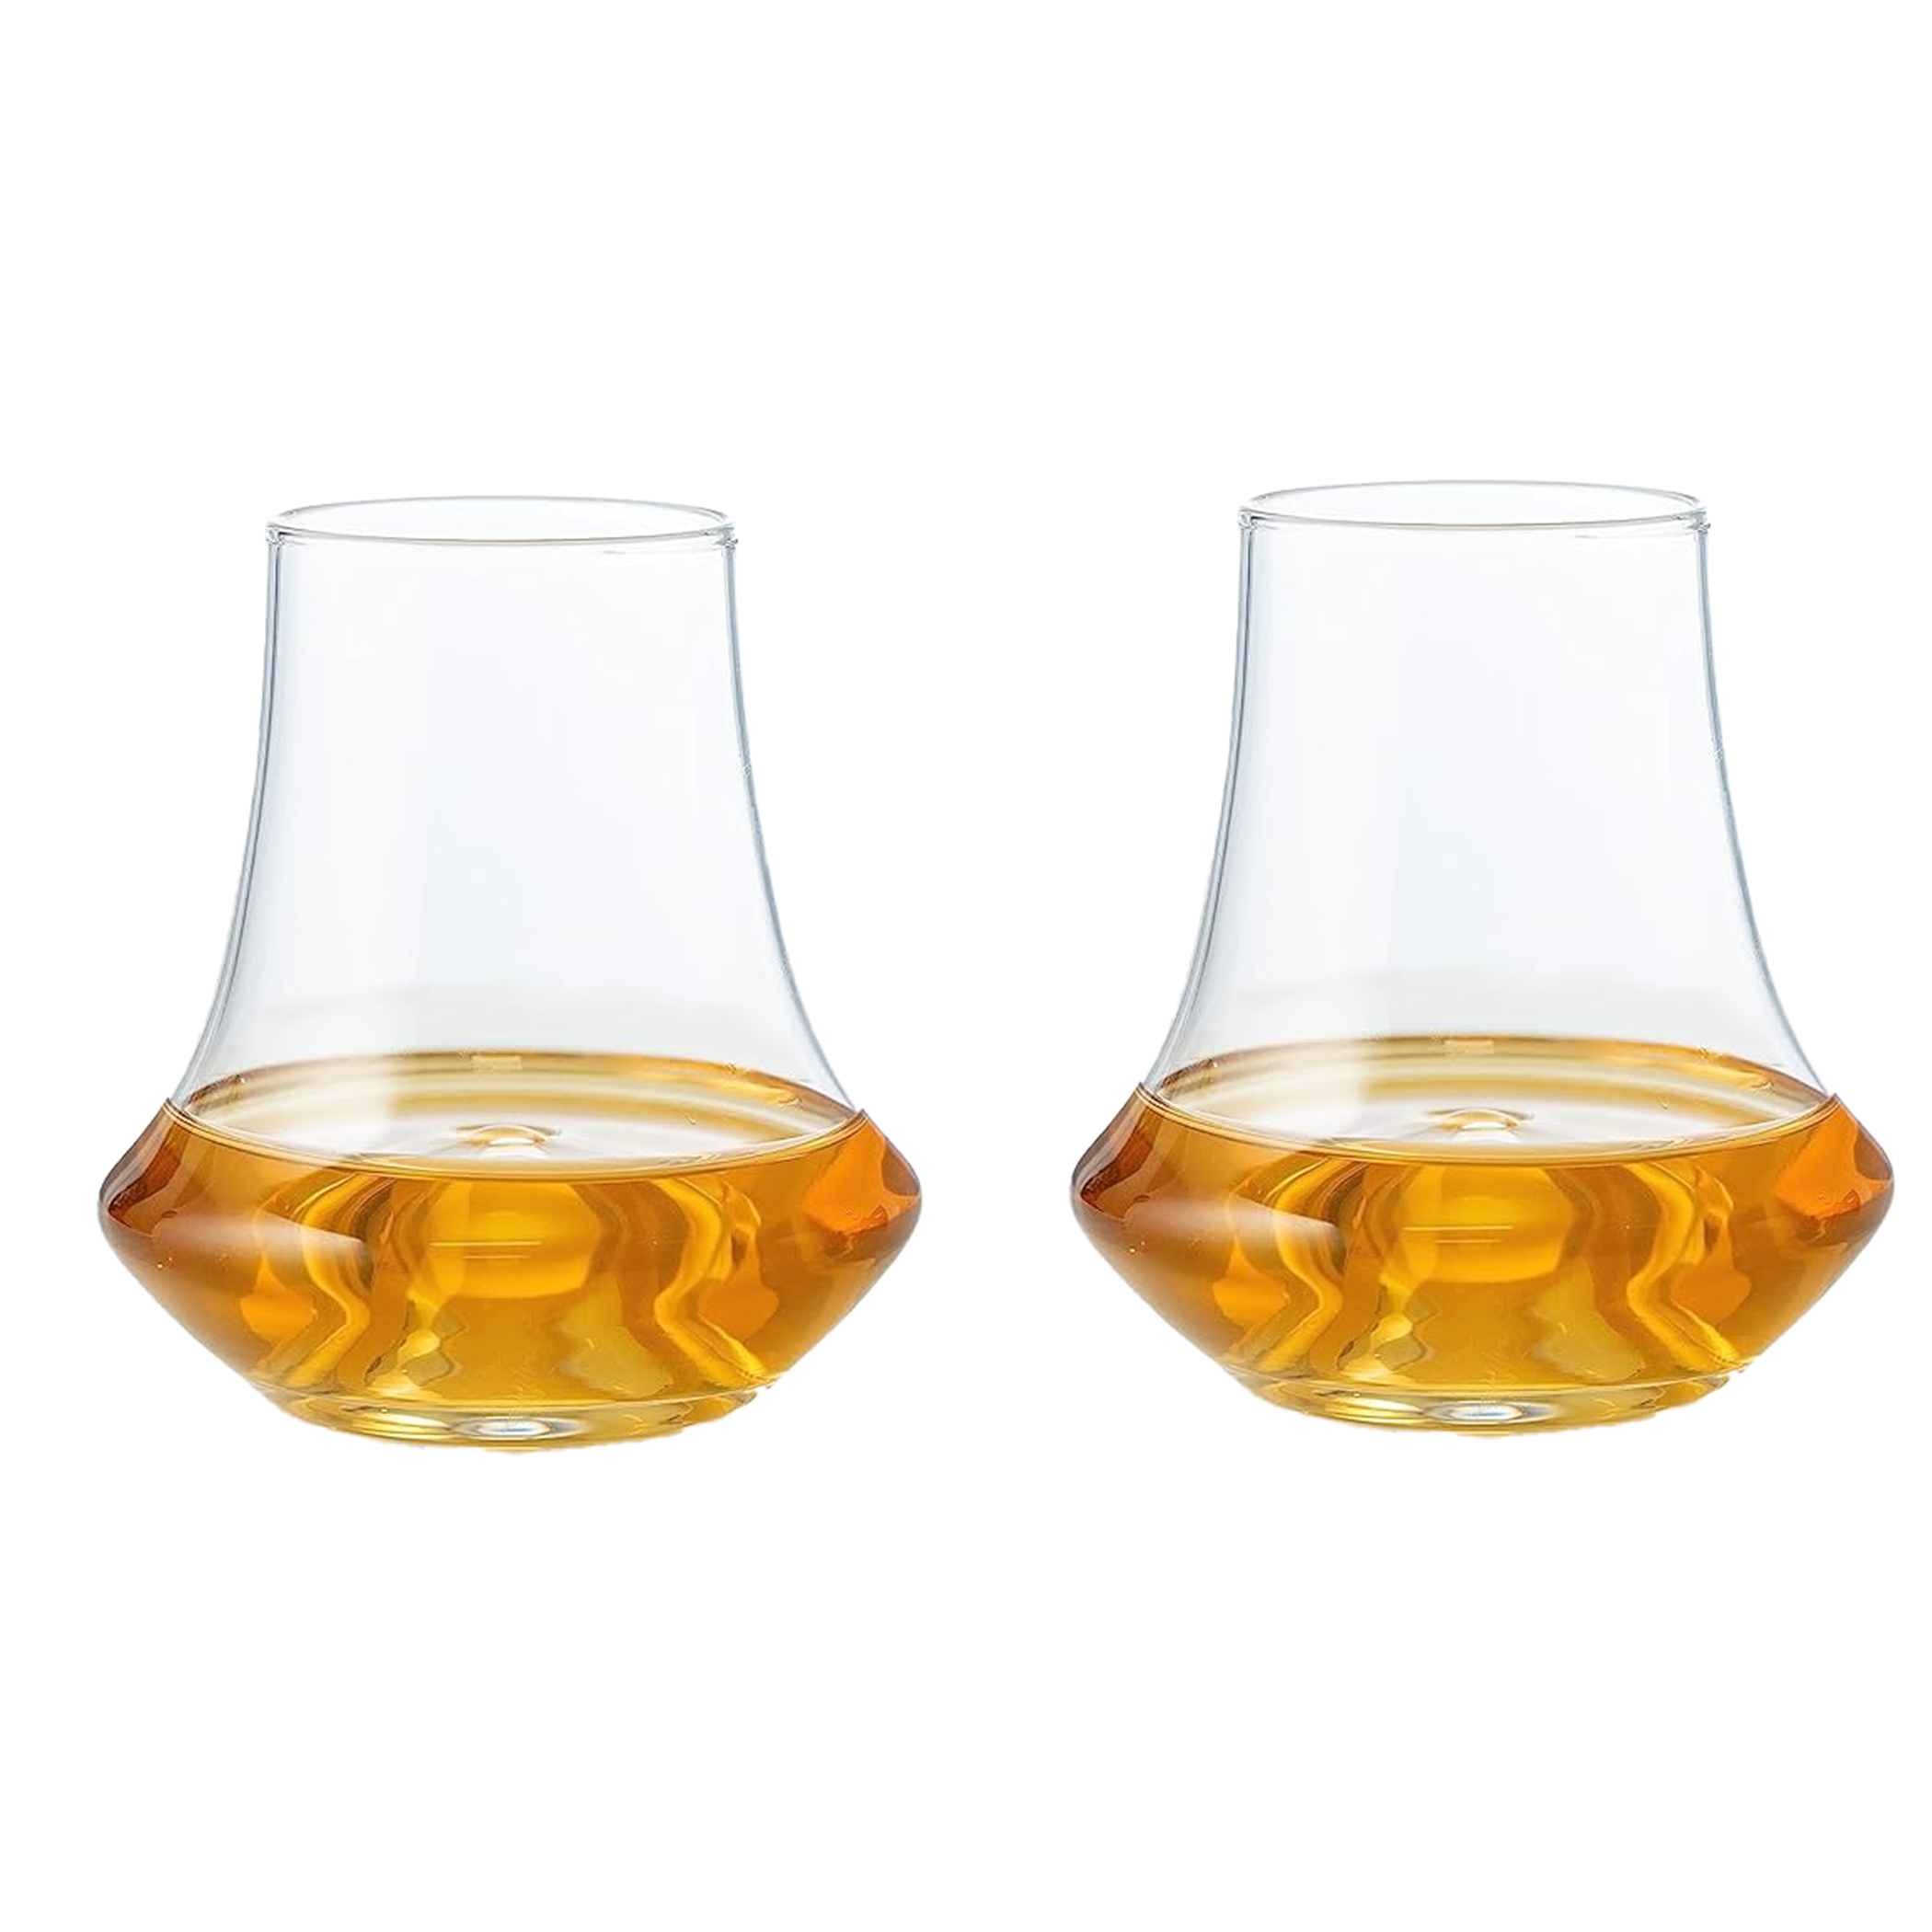 Whiskey Snifter Glasses - Set of 2/4 -  (250 mL / 8.5 fl. oz)